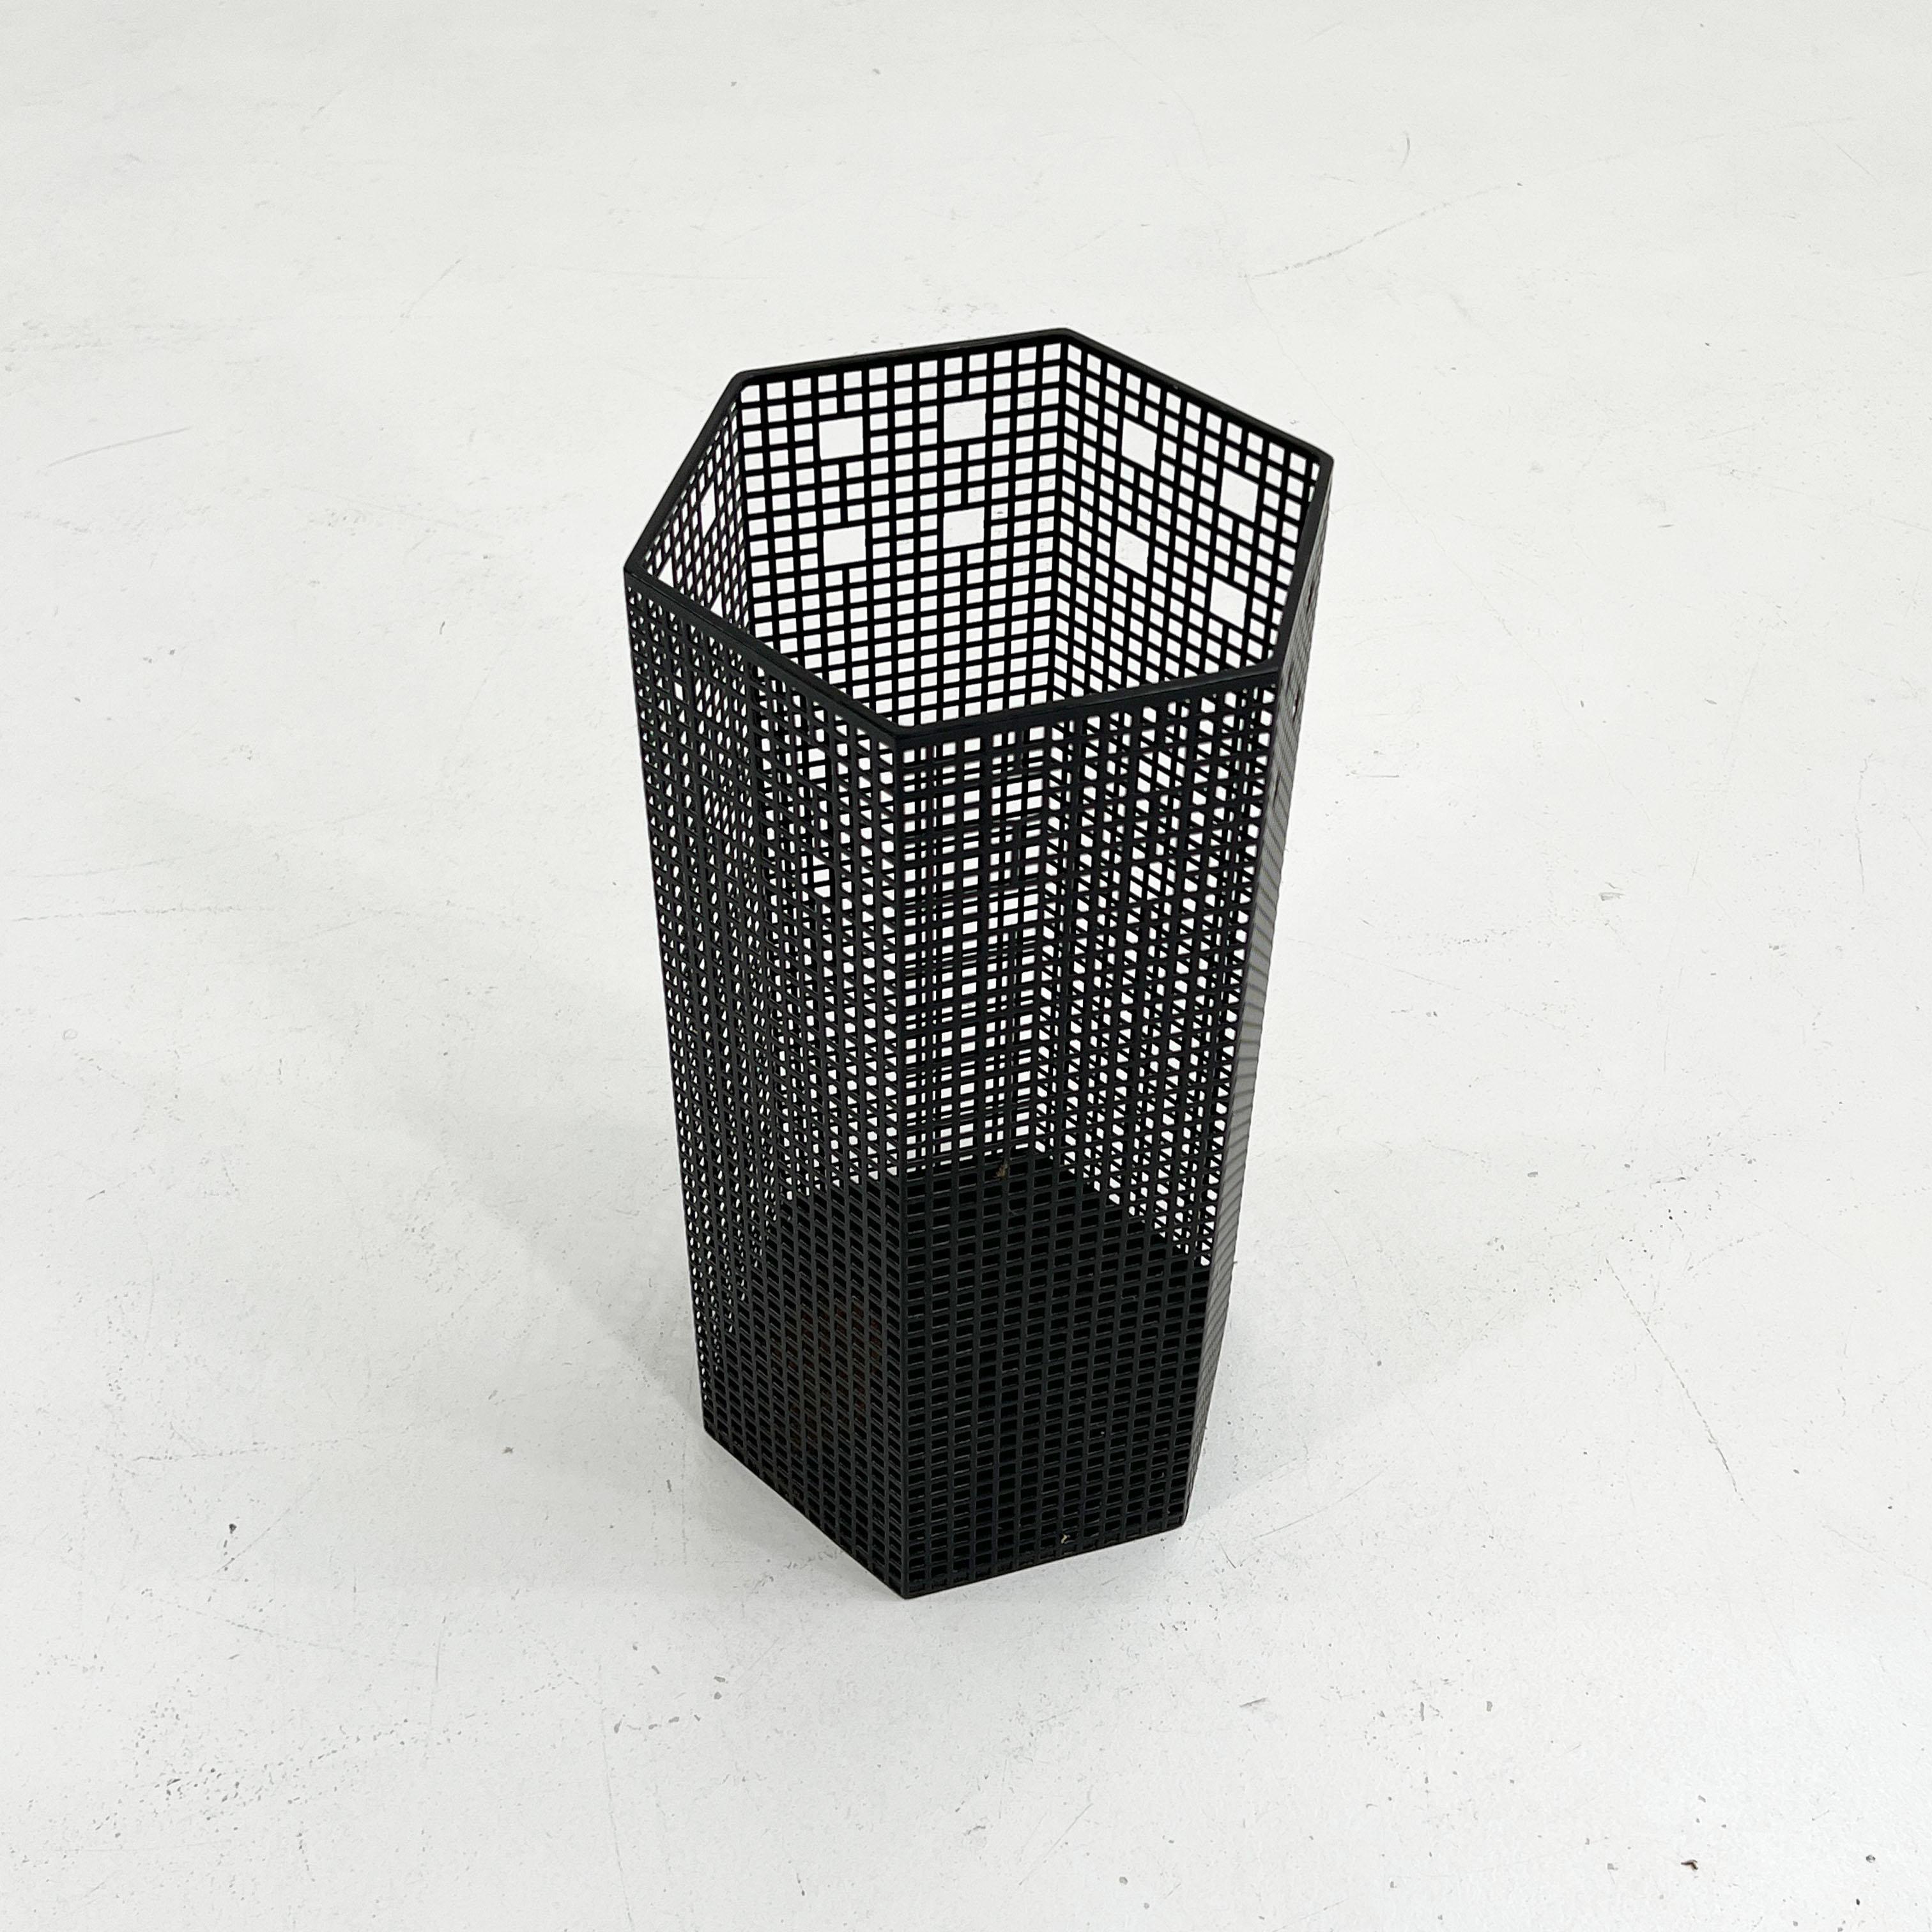 Mid-Century Modern Umbrella Stand or Waste Paper Basket by Josef Hoffmann for Bieffeplast, 1980s